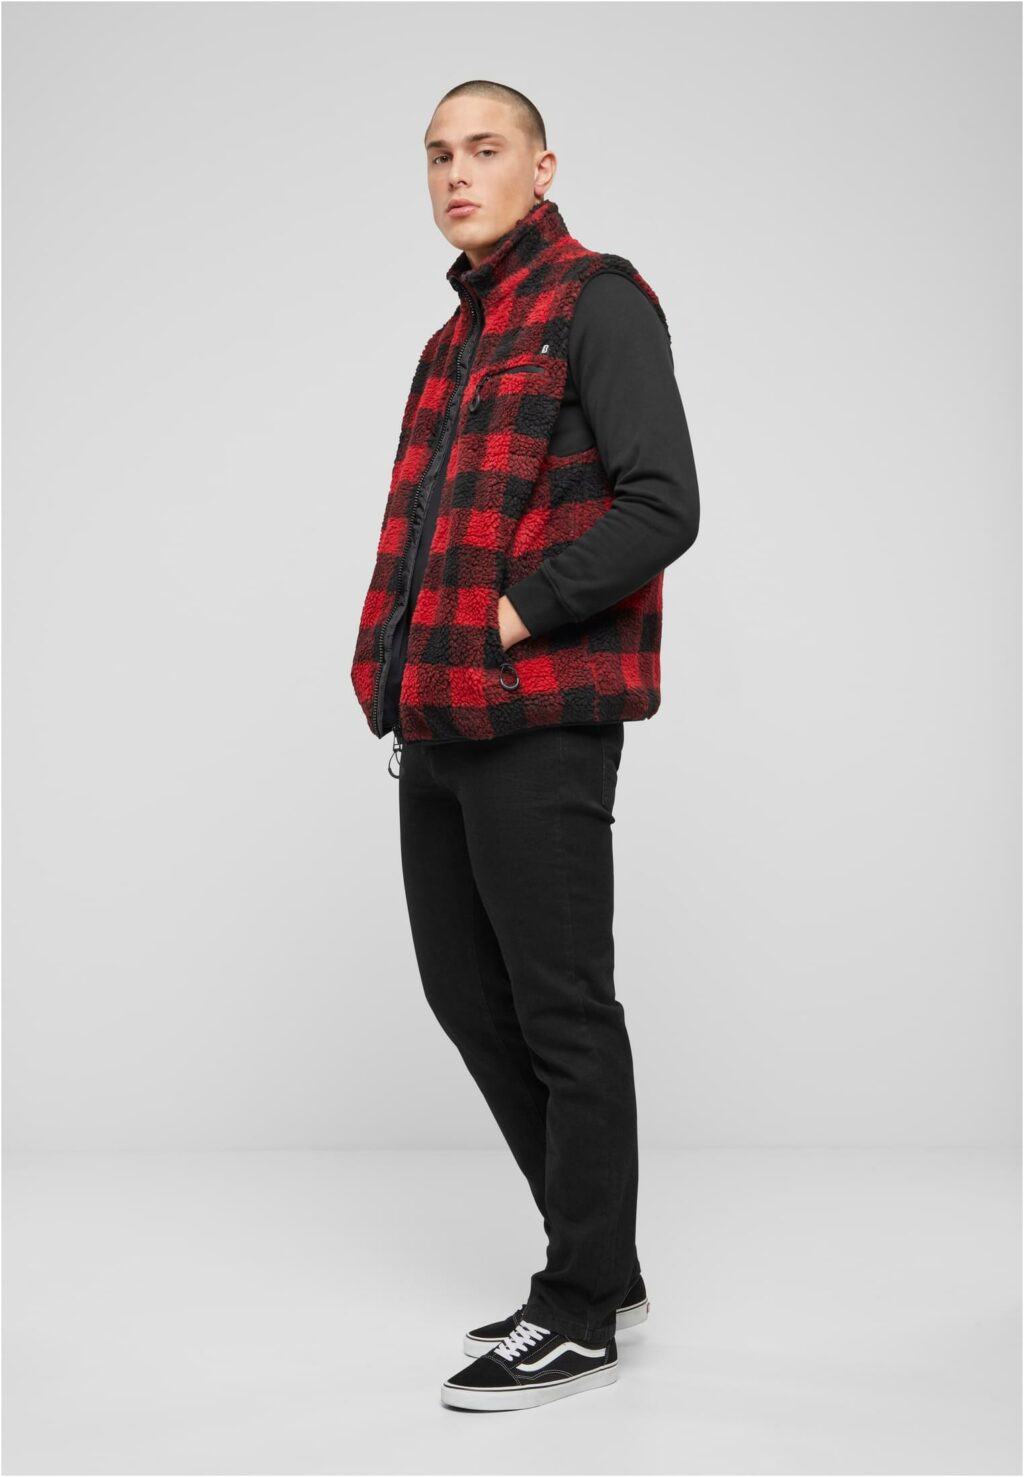 Brandit Teddyfleece Vest Men red/black BD5025